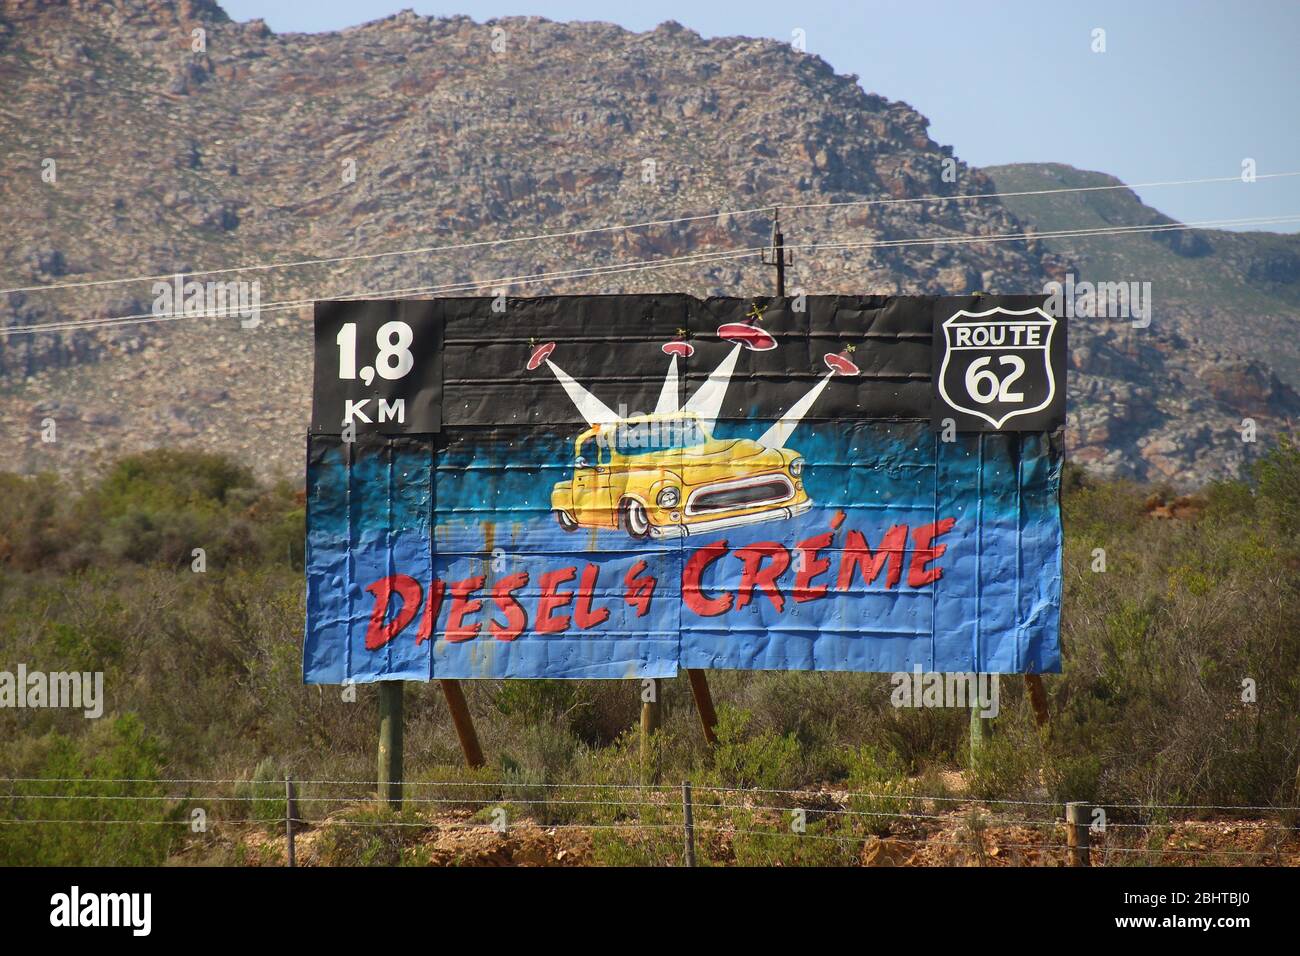 Werbeschild neben der Landstraße, an der Route 62, bei Barrydale in der Karoo. Provinz Westkap, Südafrika, Afrika. Stockfoto